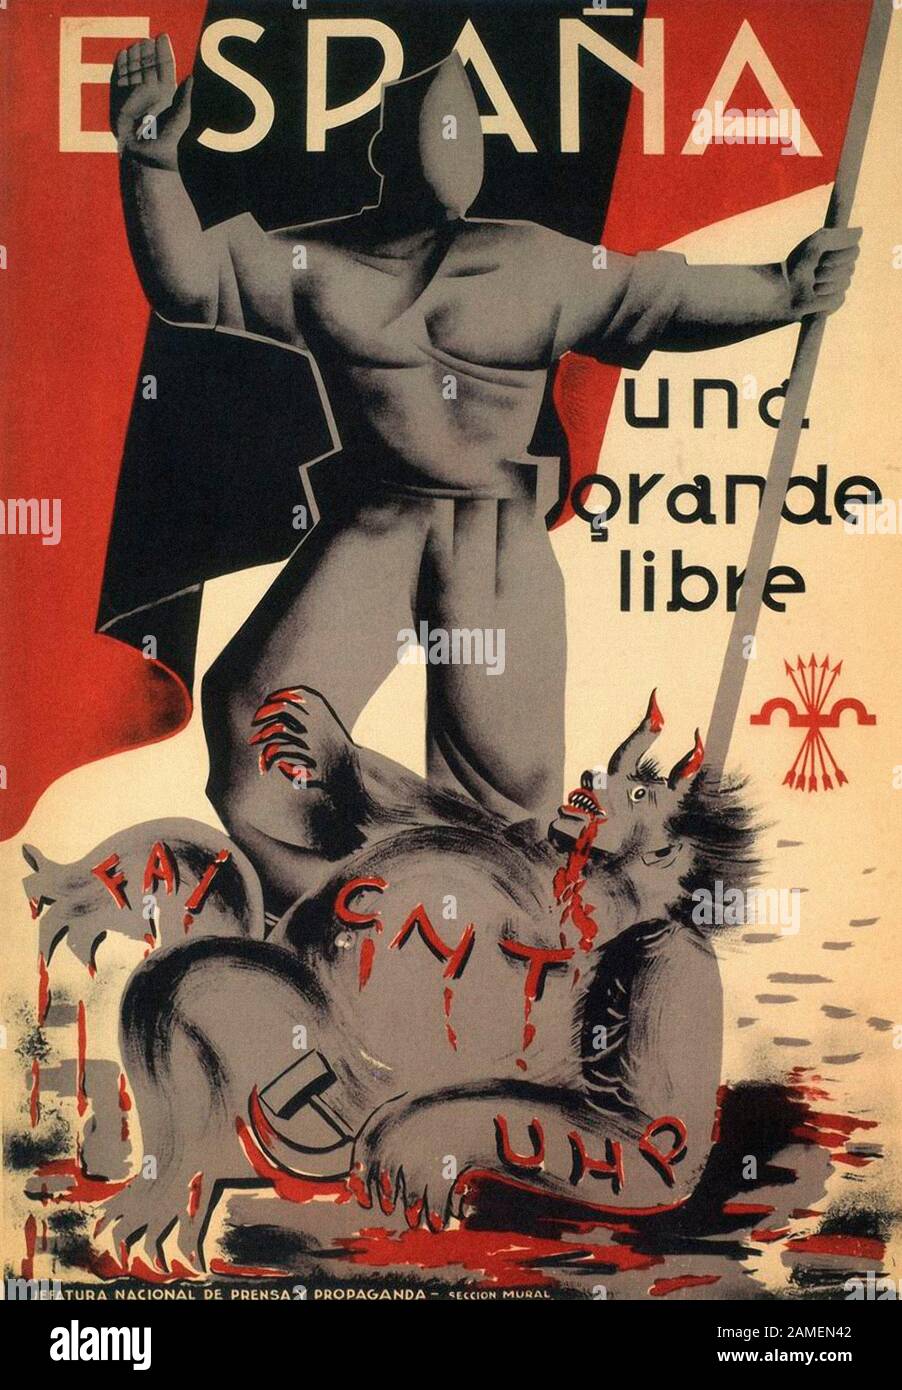 Affiche de Falange Española (Phalange espagnole) une organisation politique espagnol d'inspiration fasciste. Banque D'Images